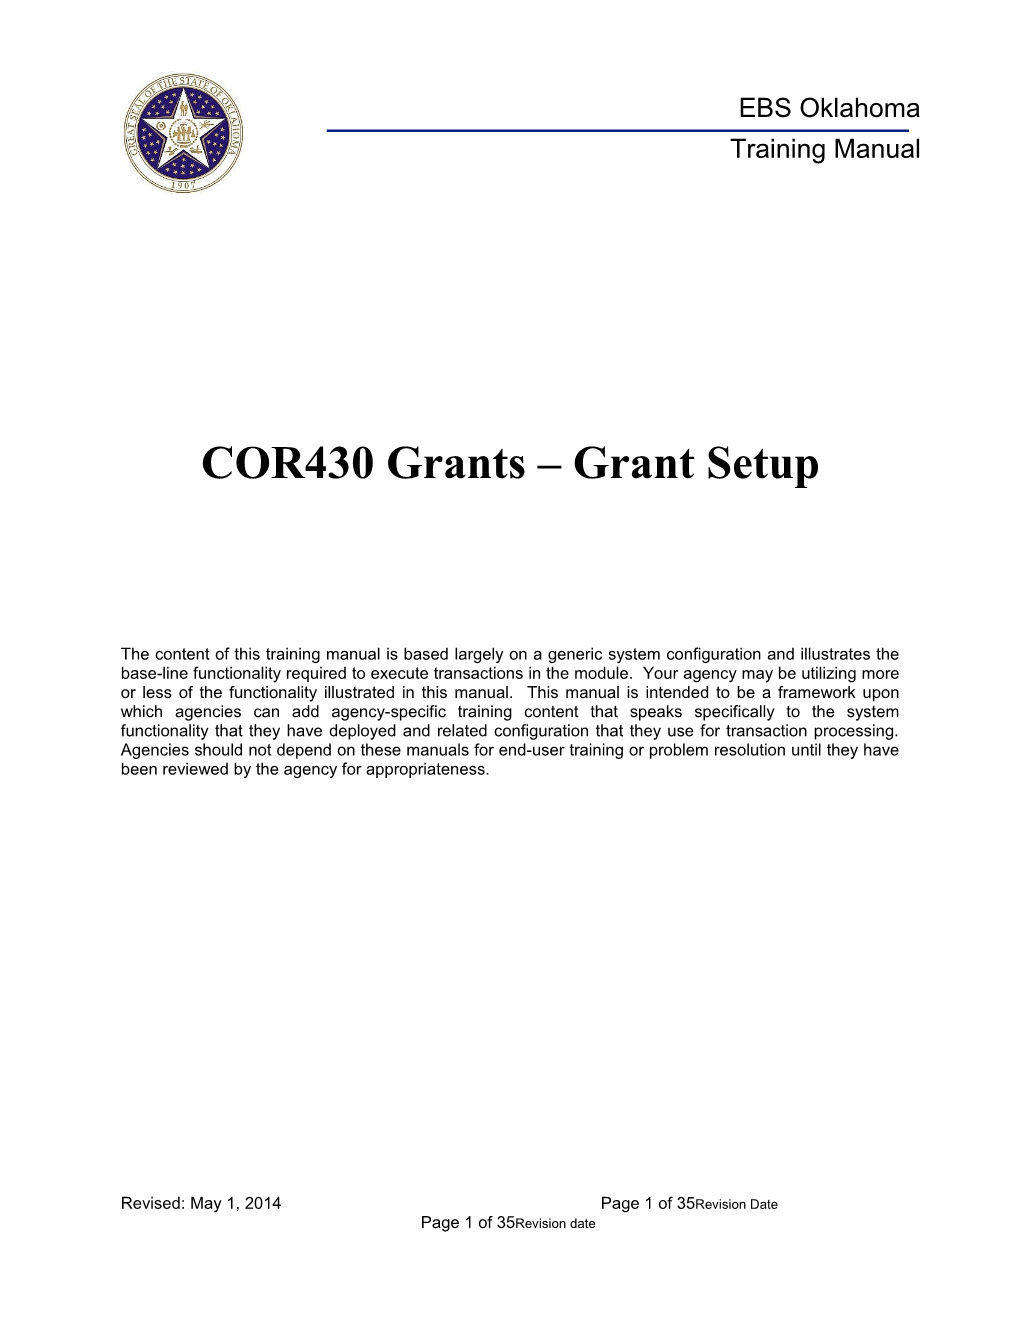 COR 430 Grants Setup Manual